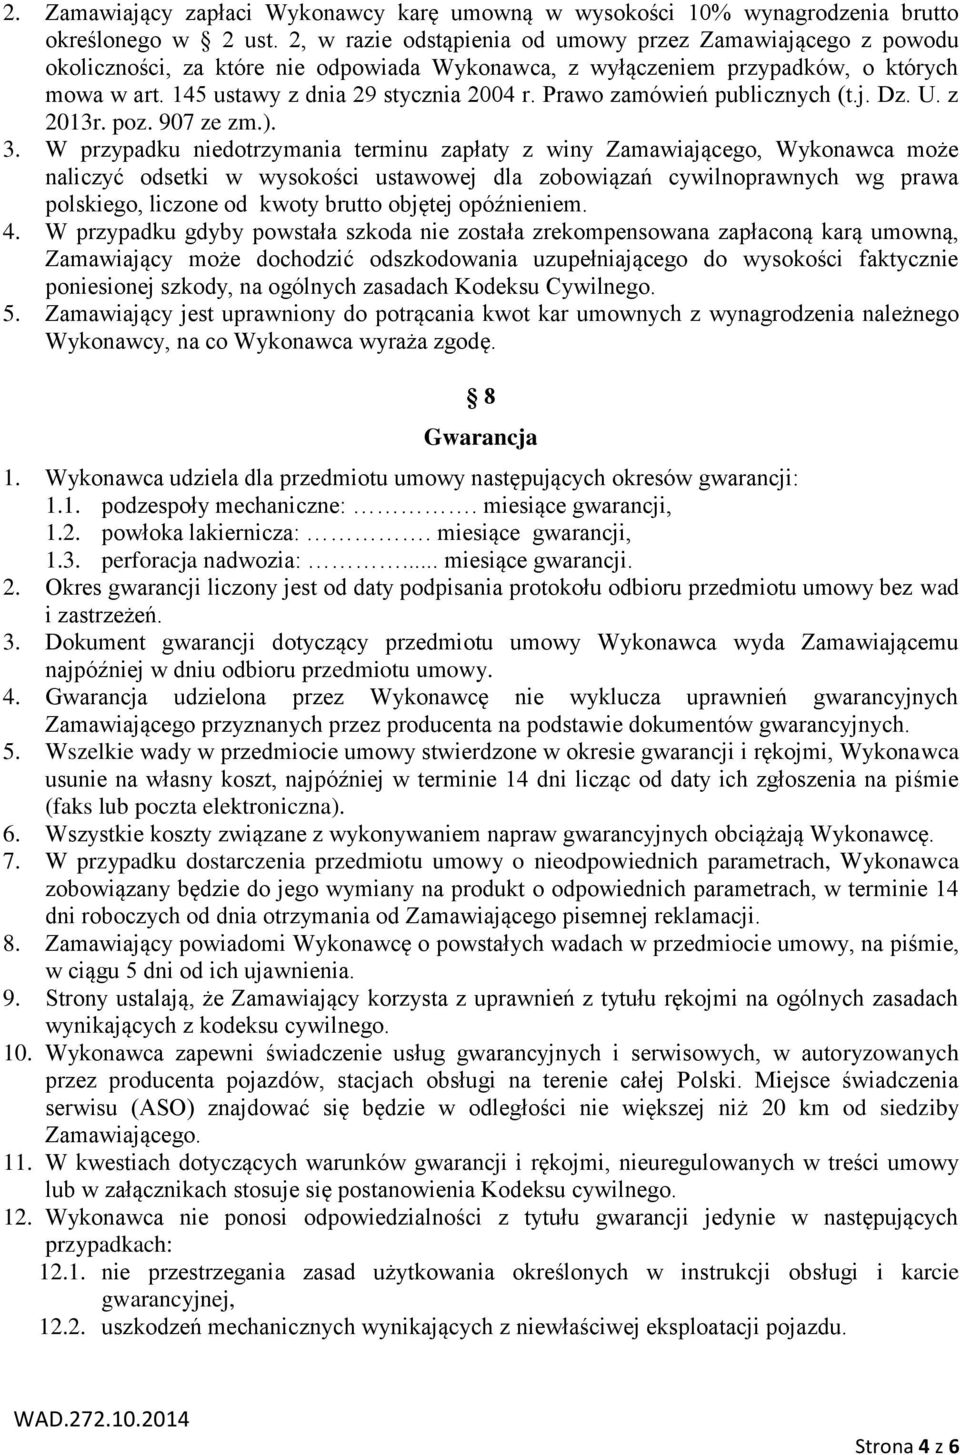 Prawo zamówień publicznych (t.j. Dz. U. z 2013r. poz. 907 ze zm.). 3.